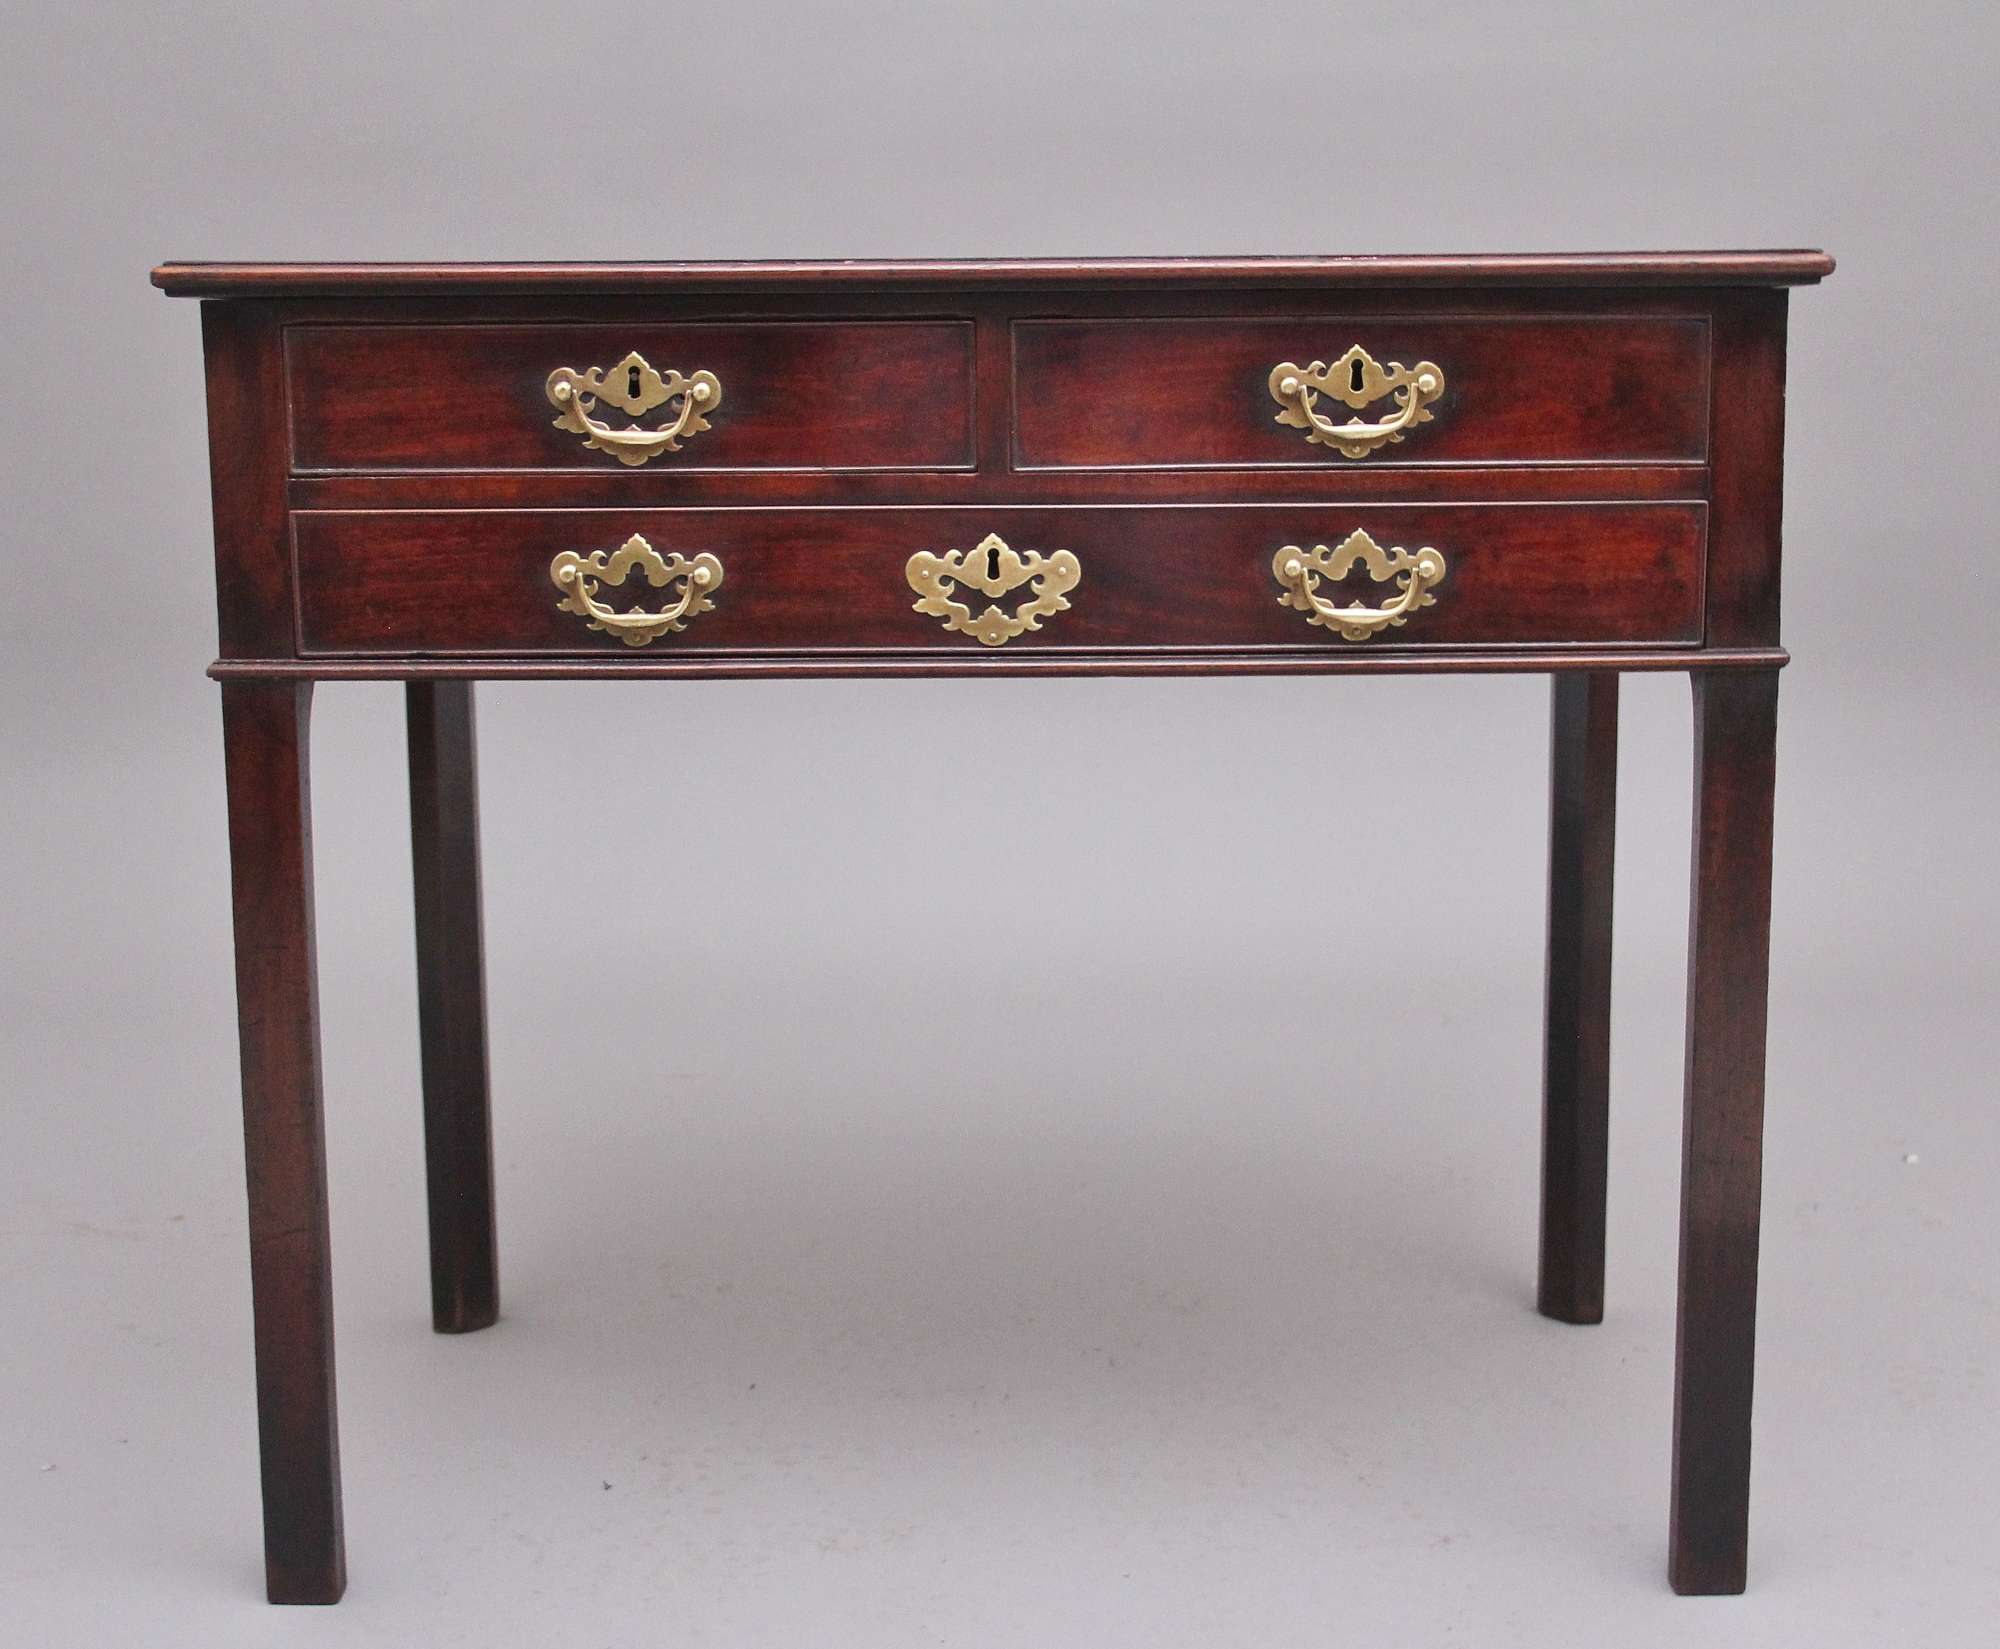 18th Century mahogany side table